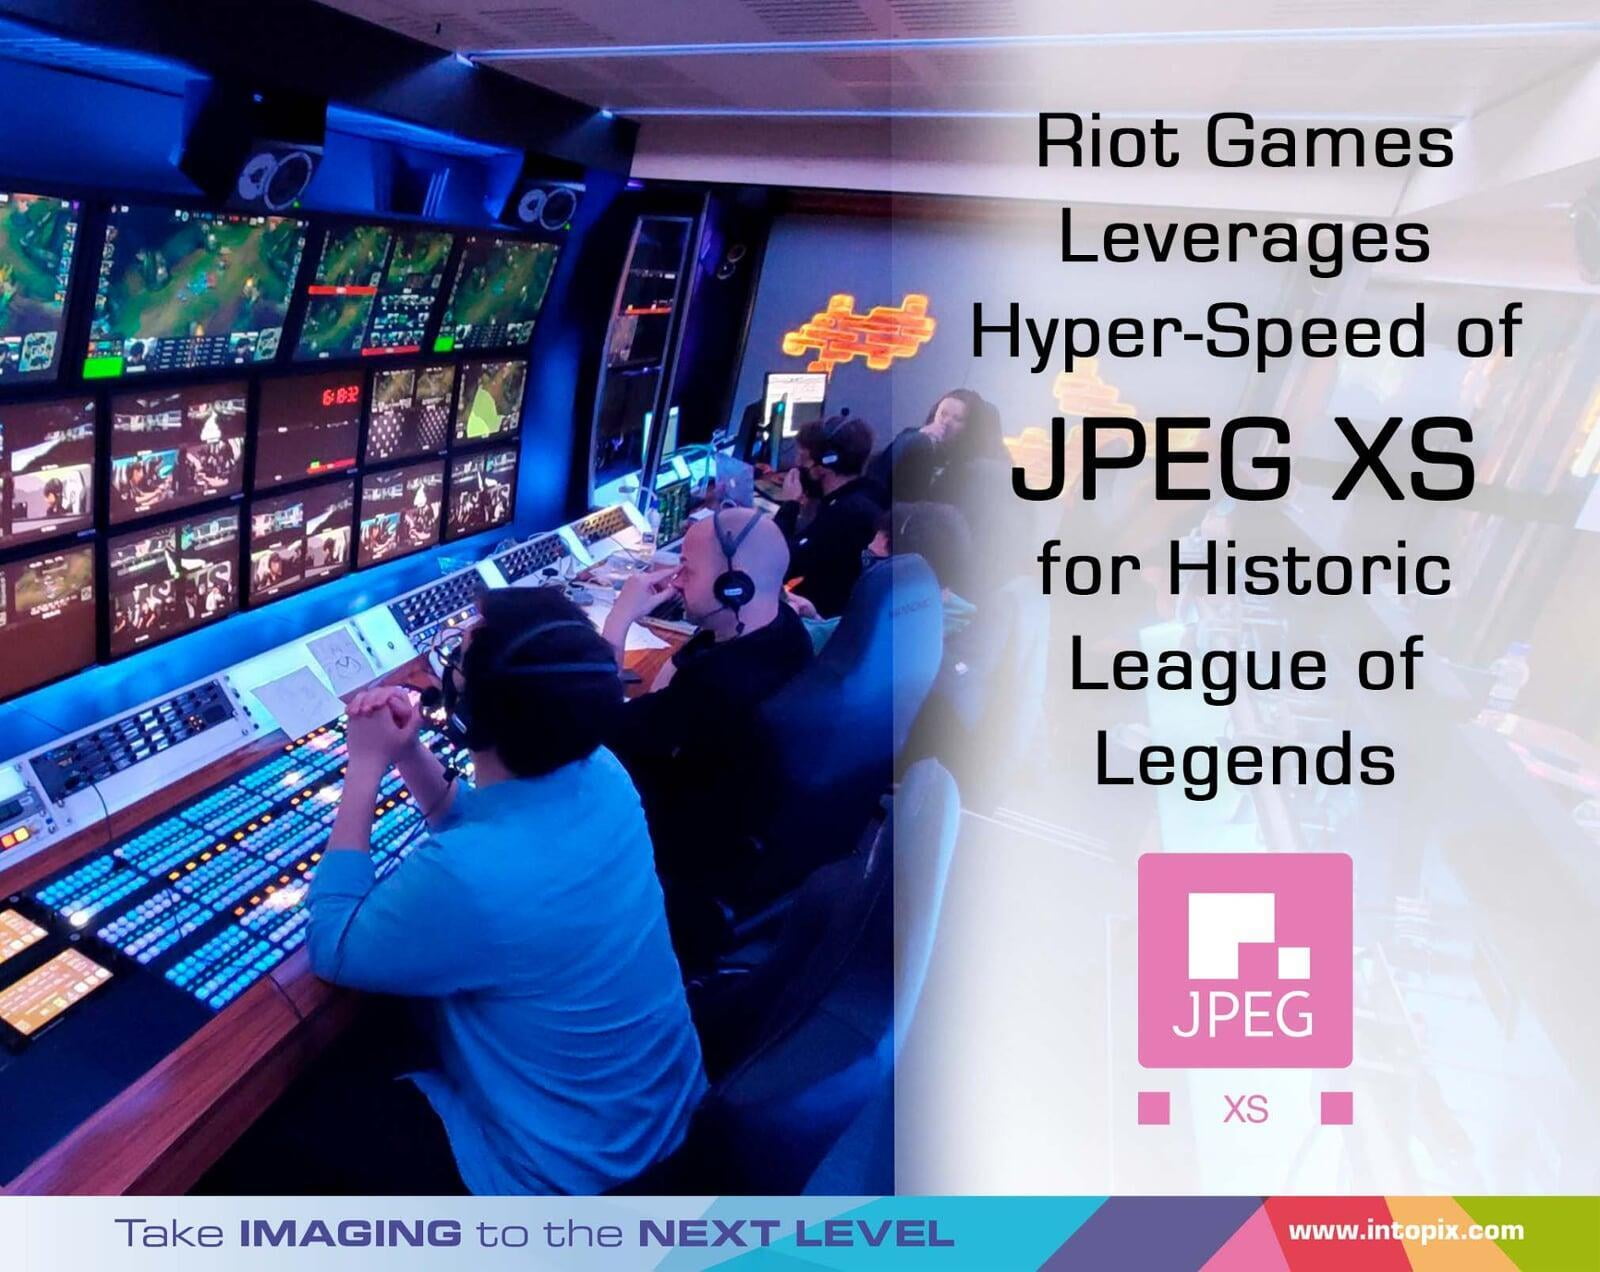 Riot Games, 아이슬란드에서 열린 역사적인 리그 오브 레전드 발로란트 이벤트에서 JPEG XS의 초고속 압축 기술 활용